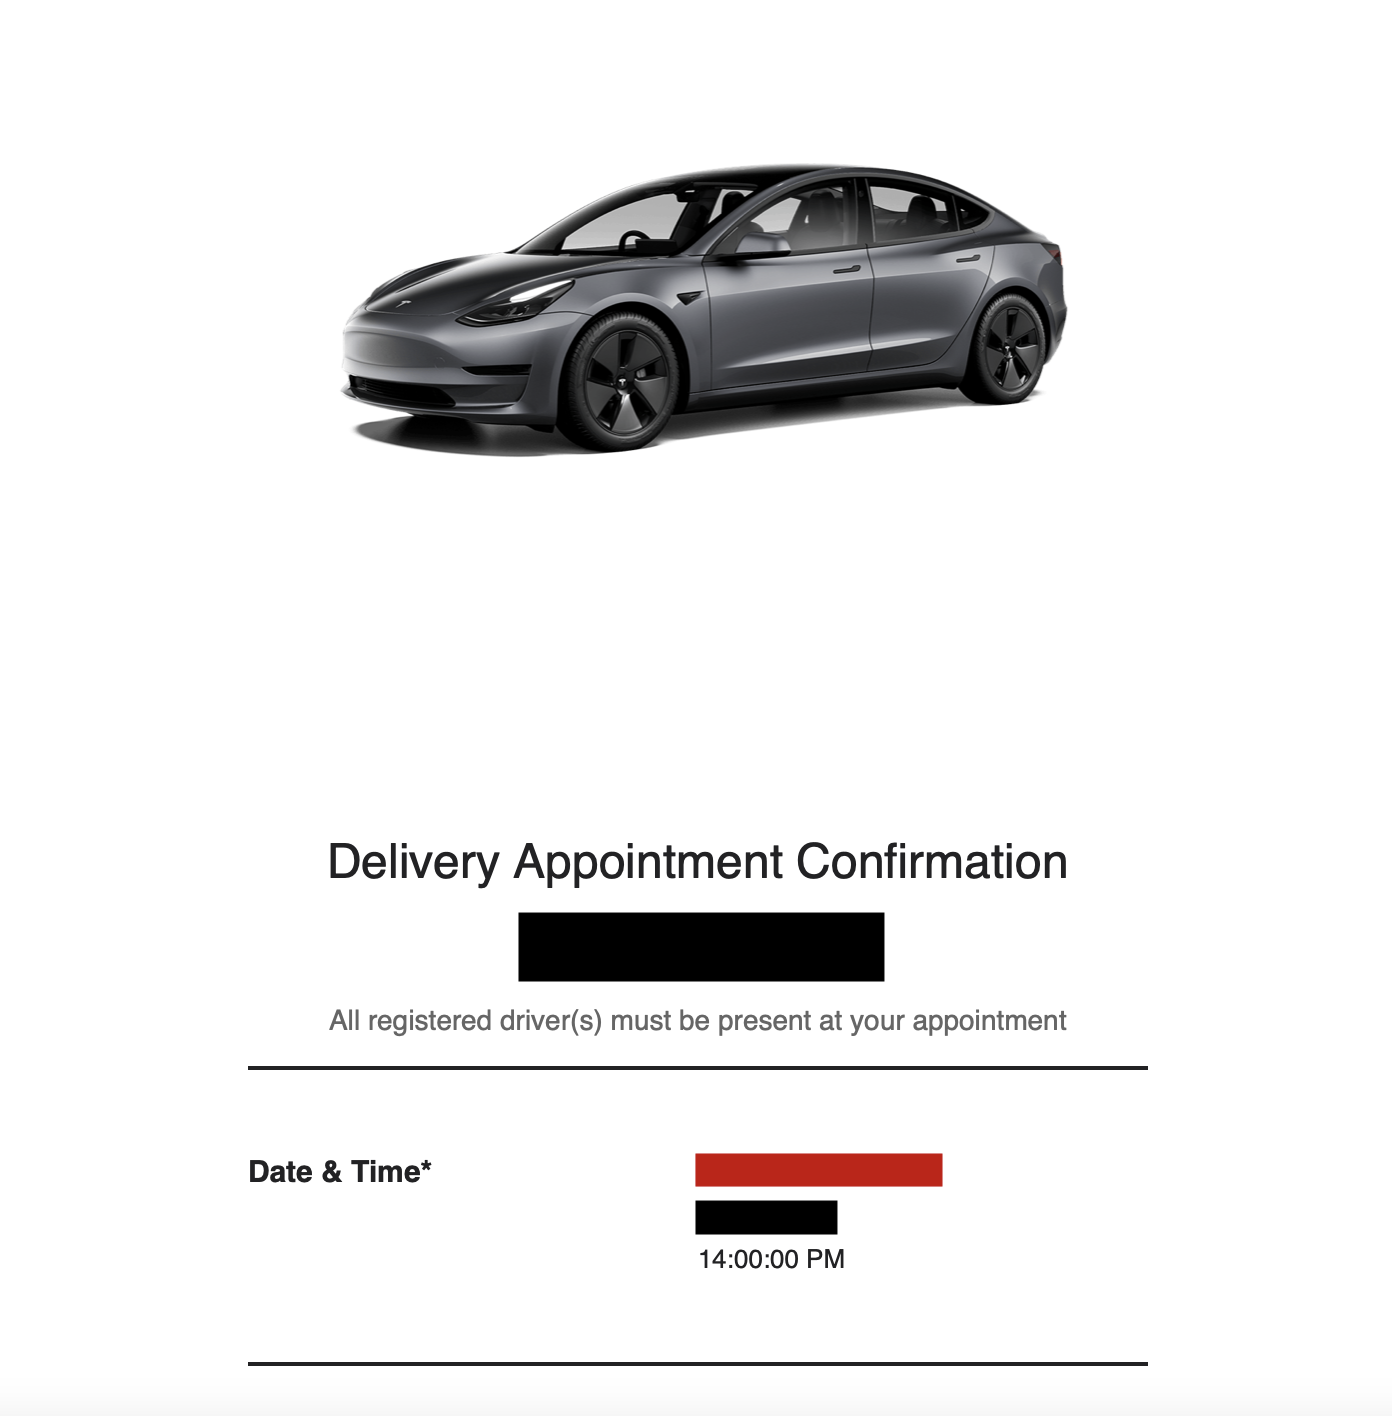 Tesla email marketing example